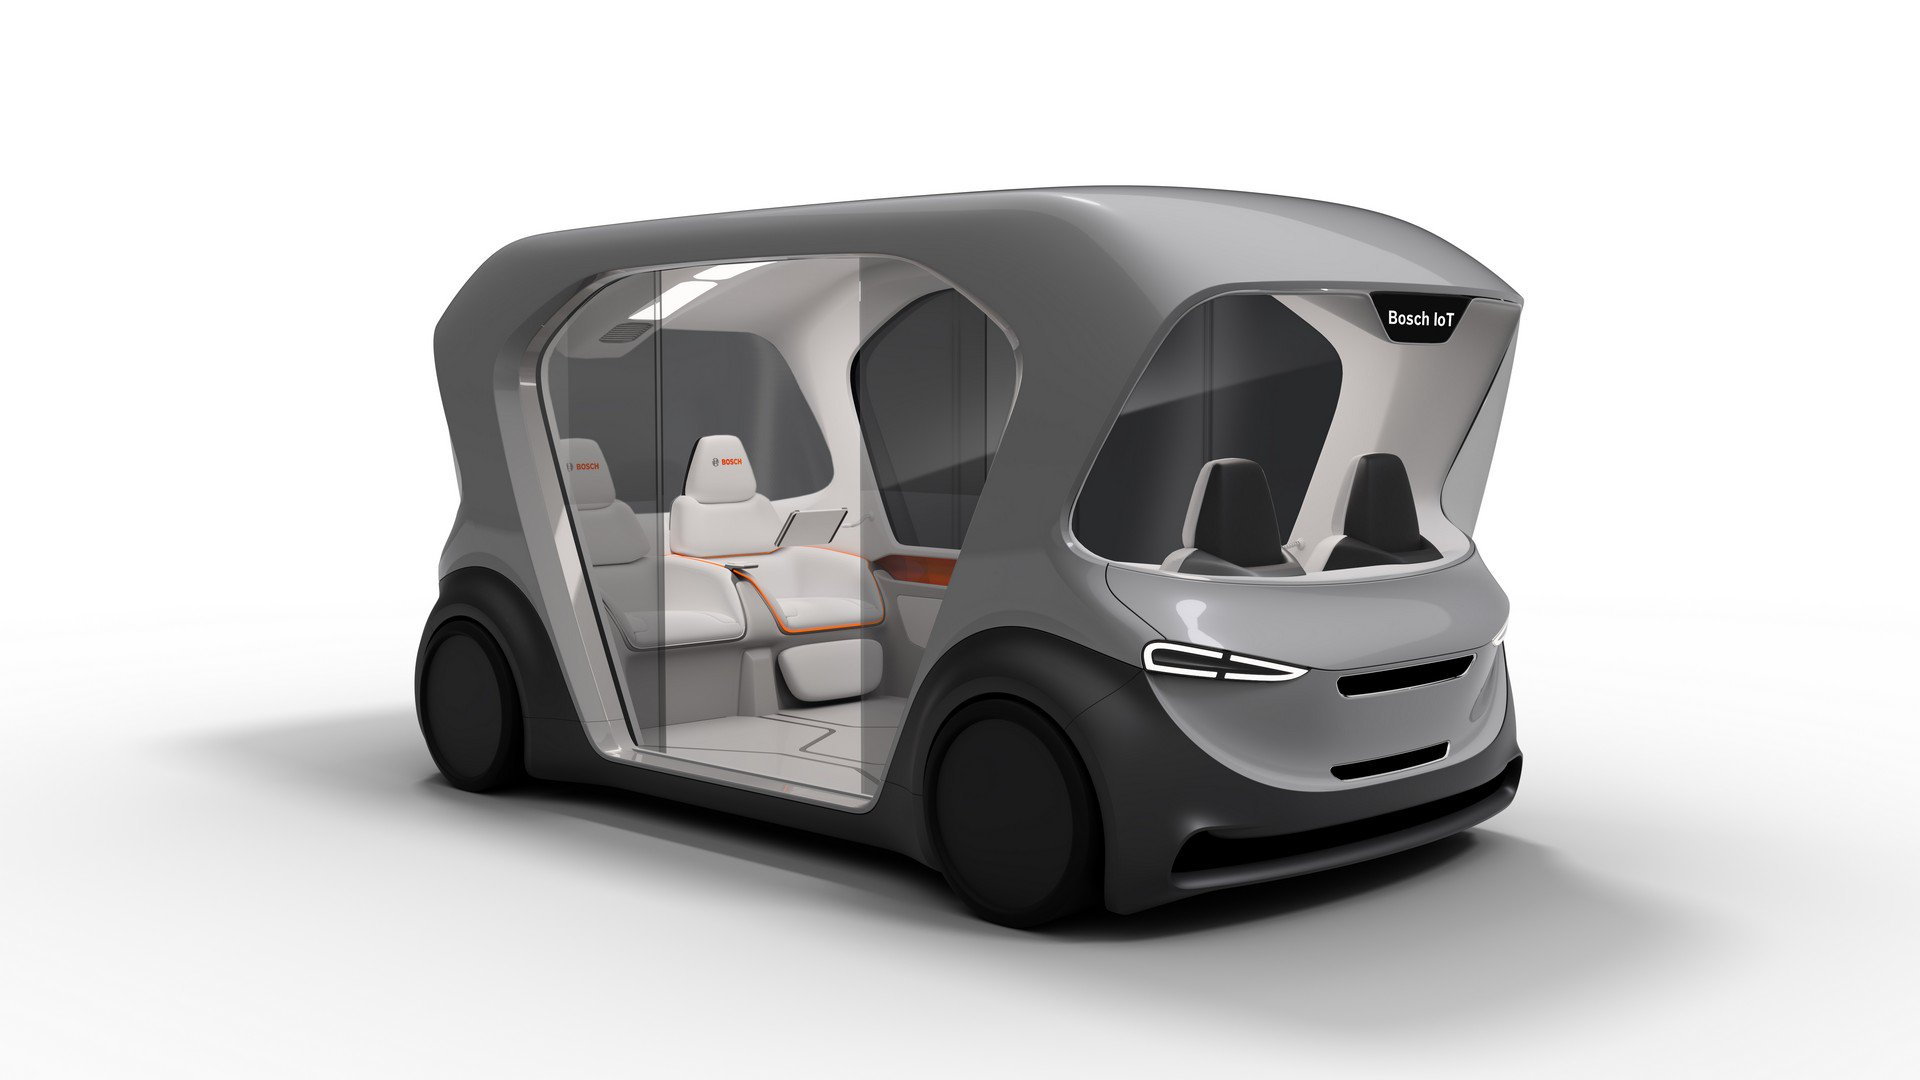 Bosch self-driving shuttle concept